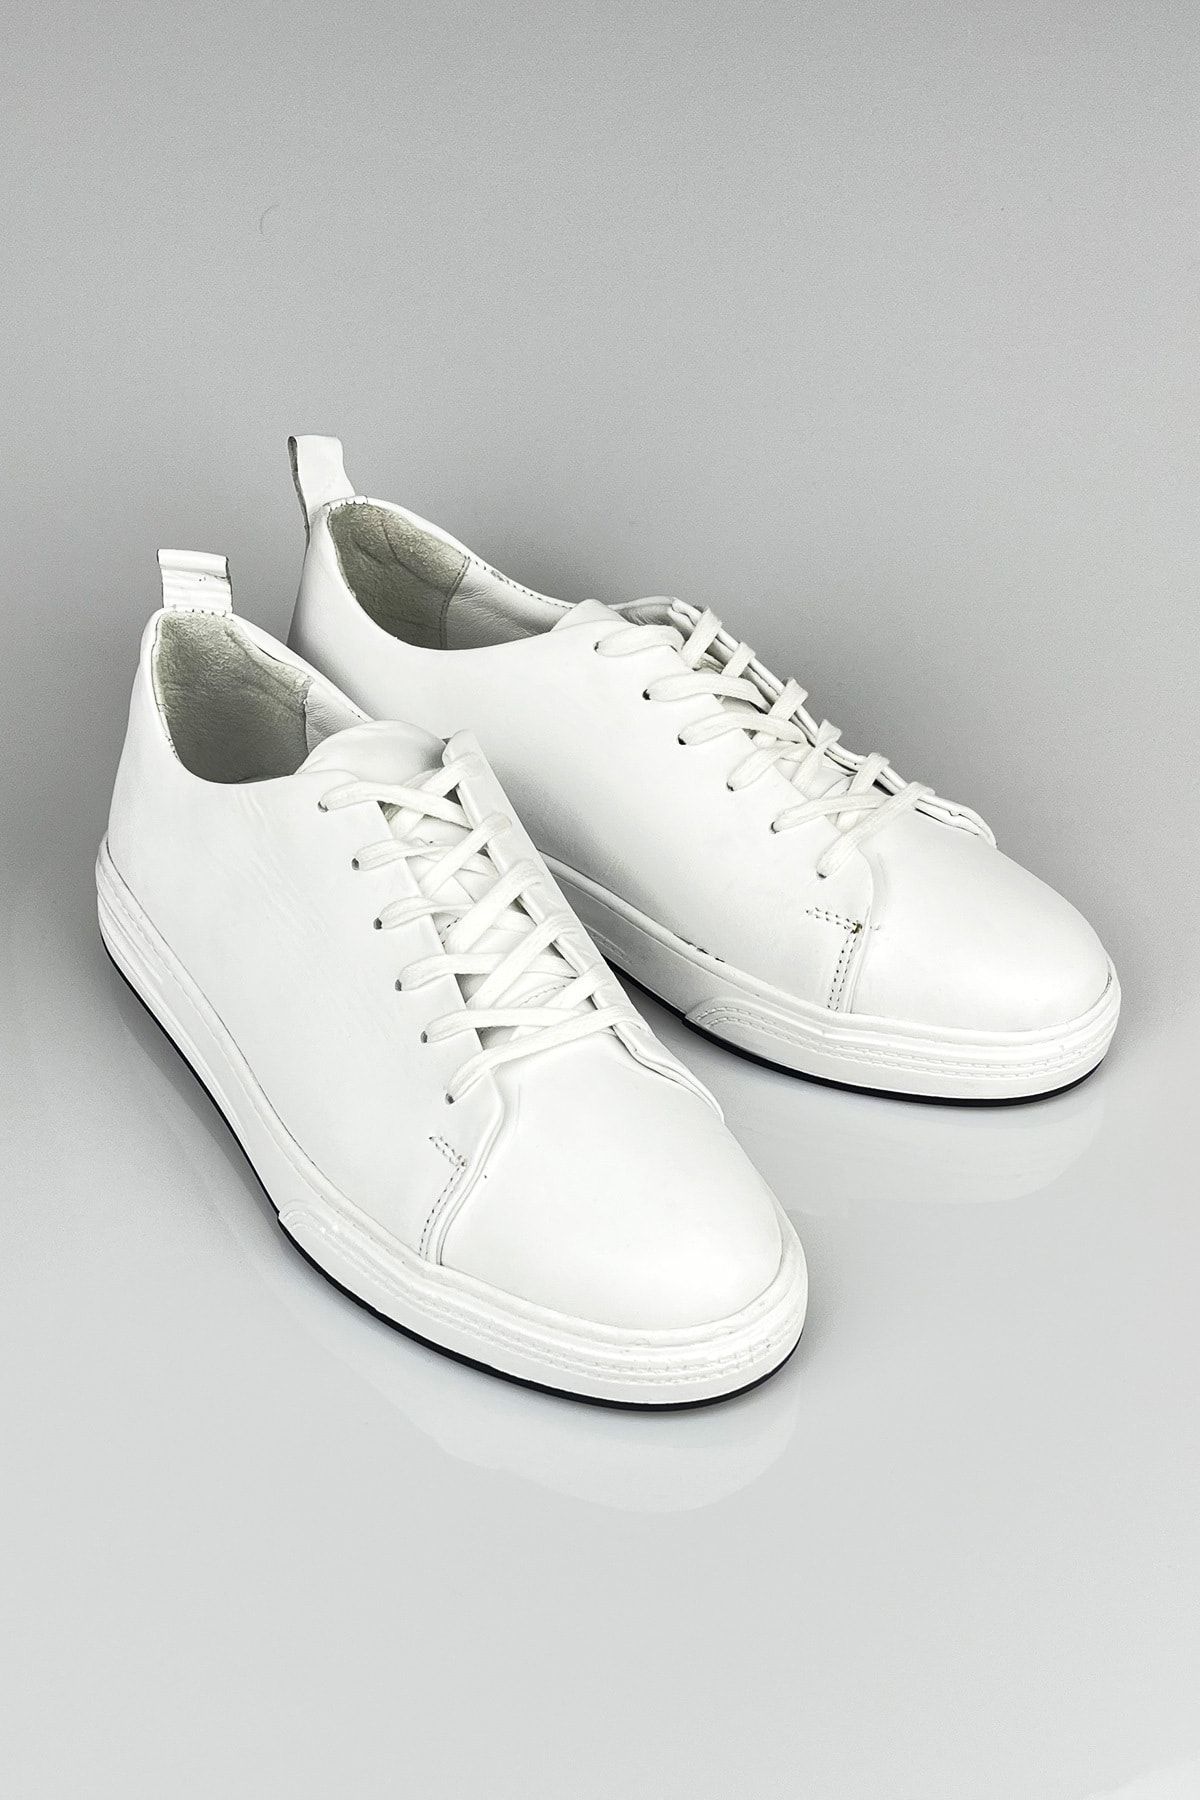 LUSIVE Hakiki Deri Beyaz Erkek Günlük Sneaker Ayakkabı Luas23al0003